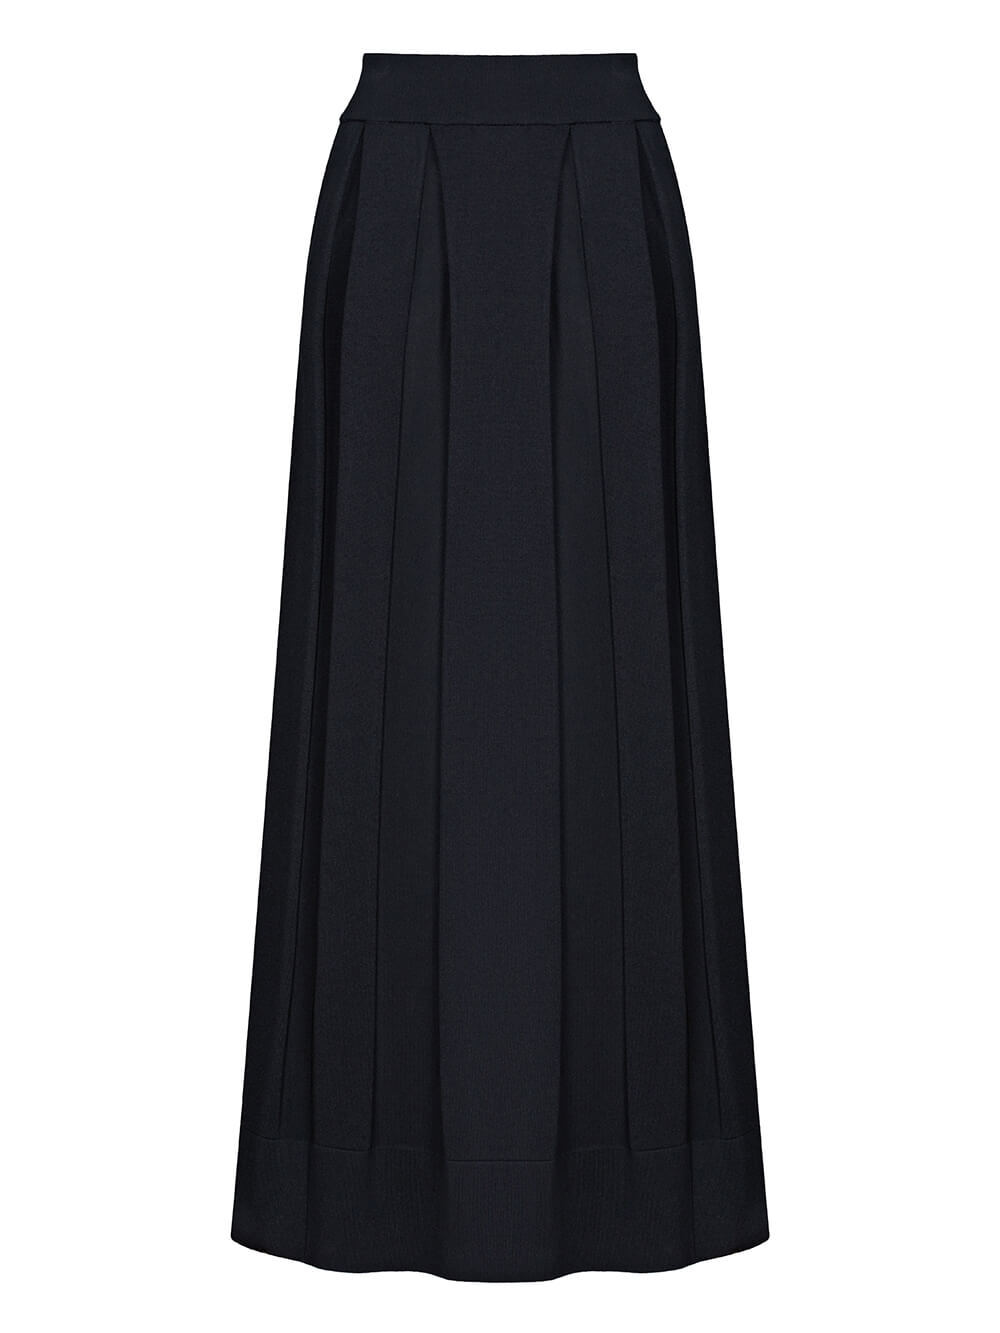 Женская юбка черного цвета из шелка и вискозы - фото 1